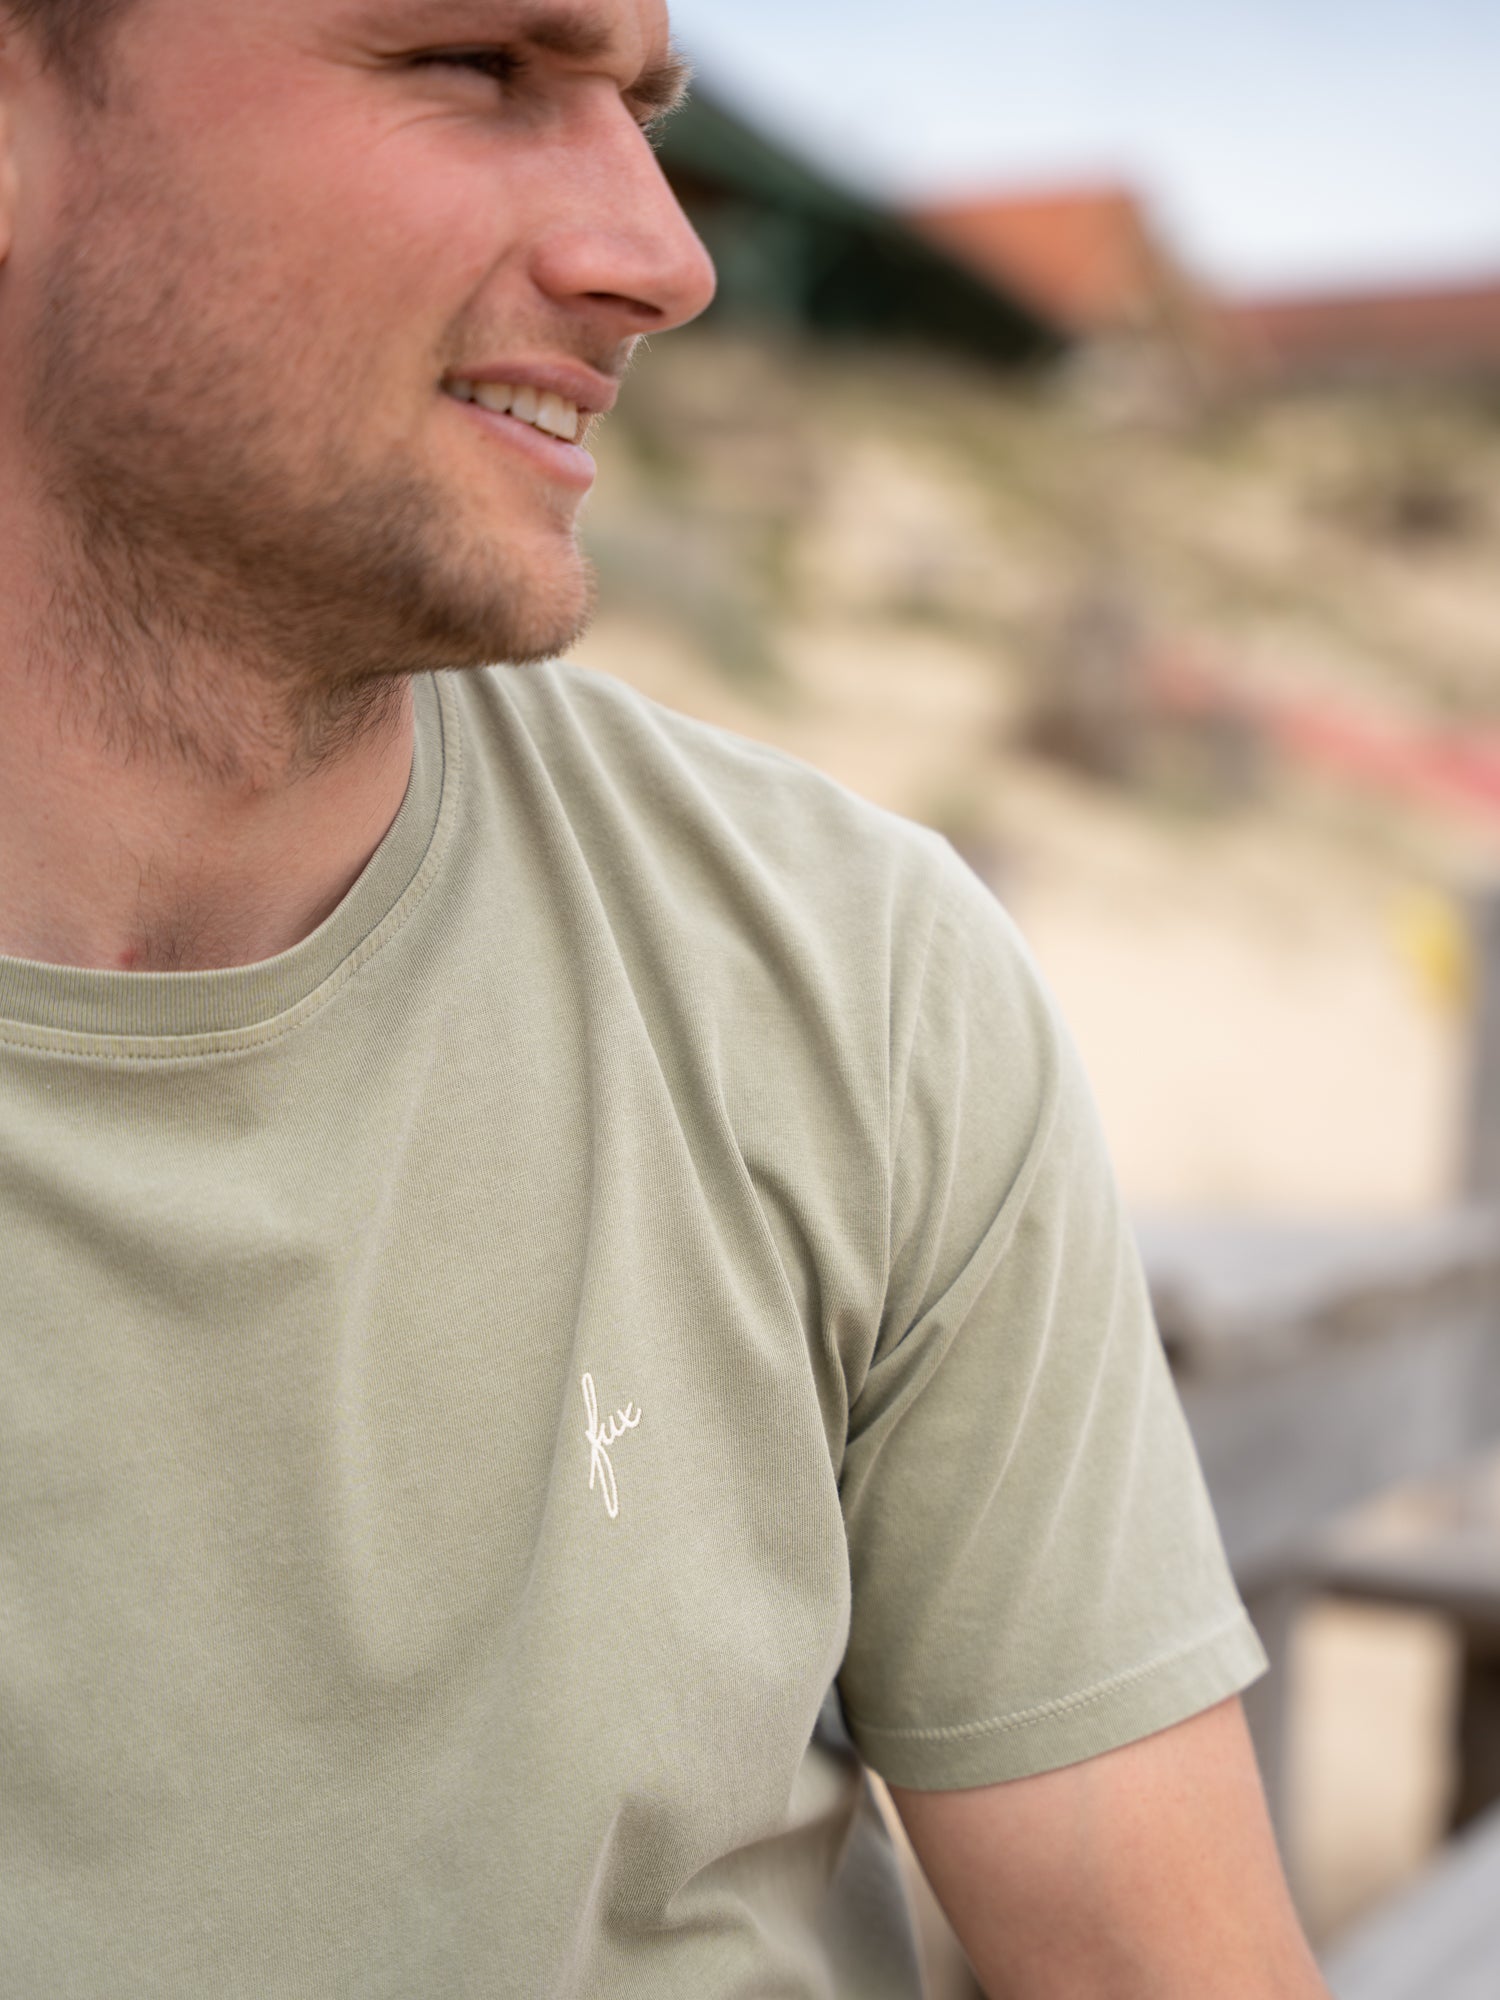 Nachhaltig und fair produzierter Männer FUXBAU T-Shirt in grün auf naturfarbenbasis. Gefertigt aus 100% GOTS zertifizierter Biobaumwolle in Portugal.